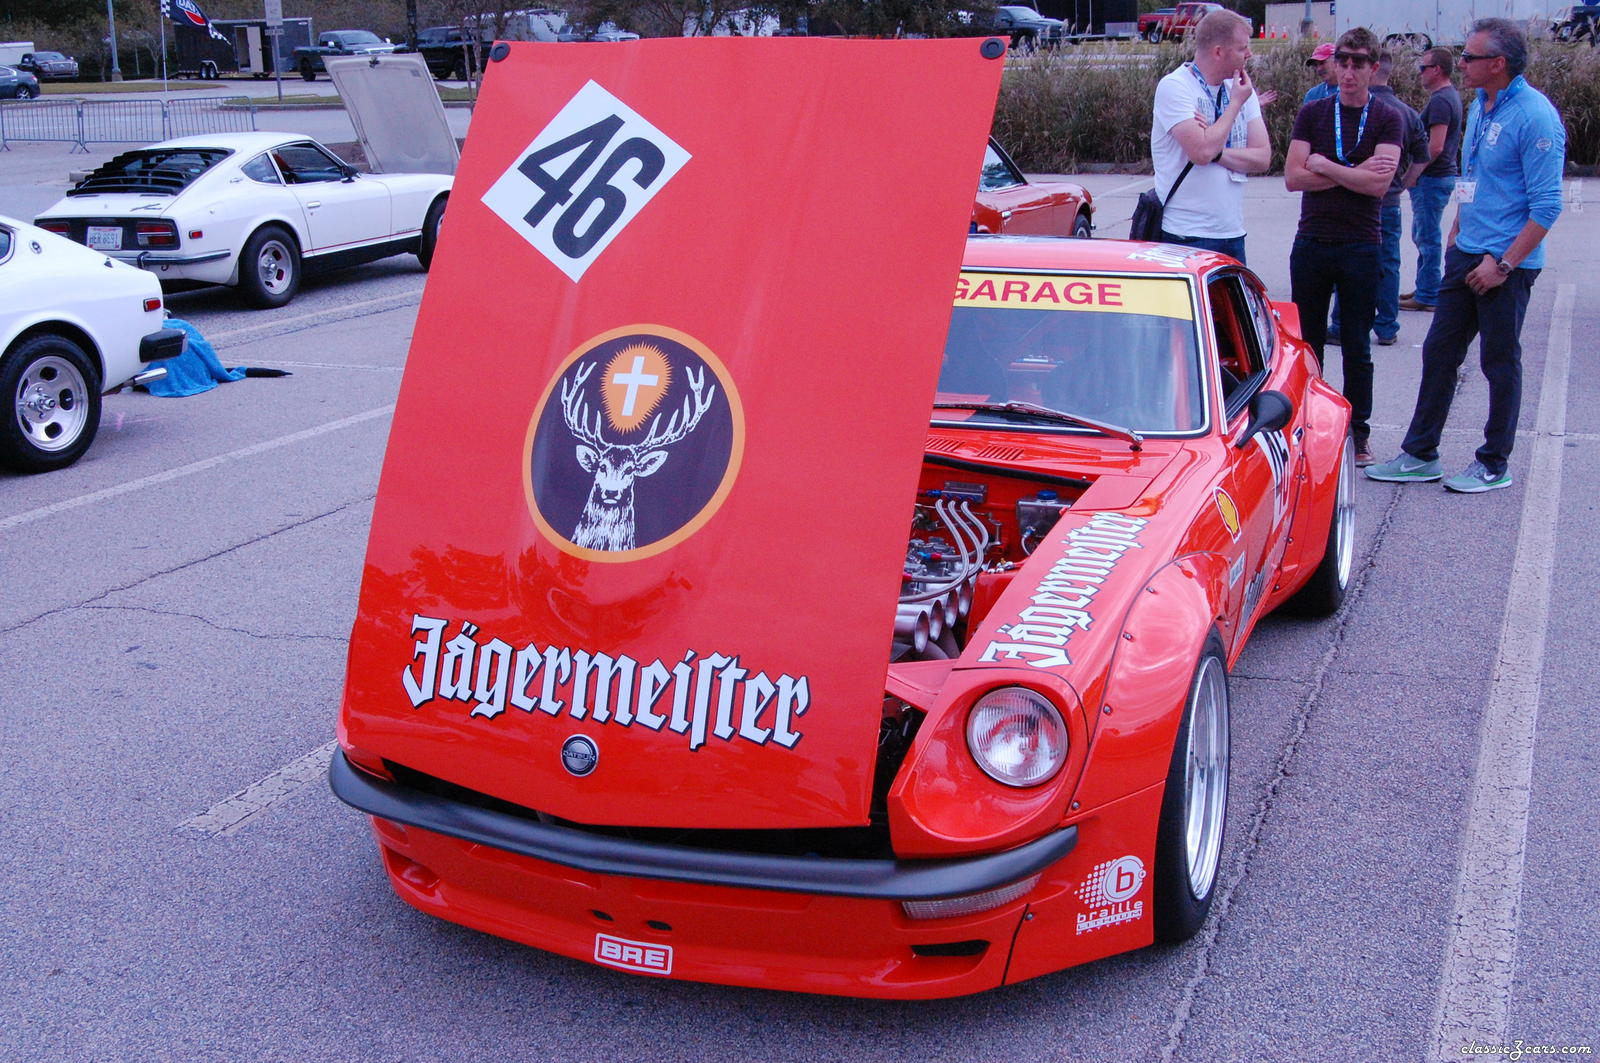 Jaffe Jaegermeister car